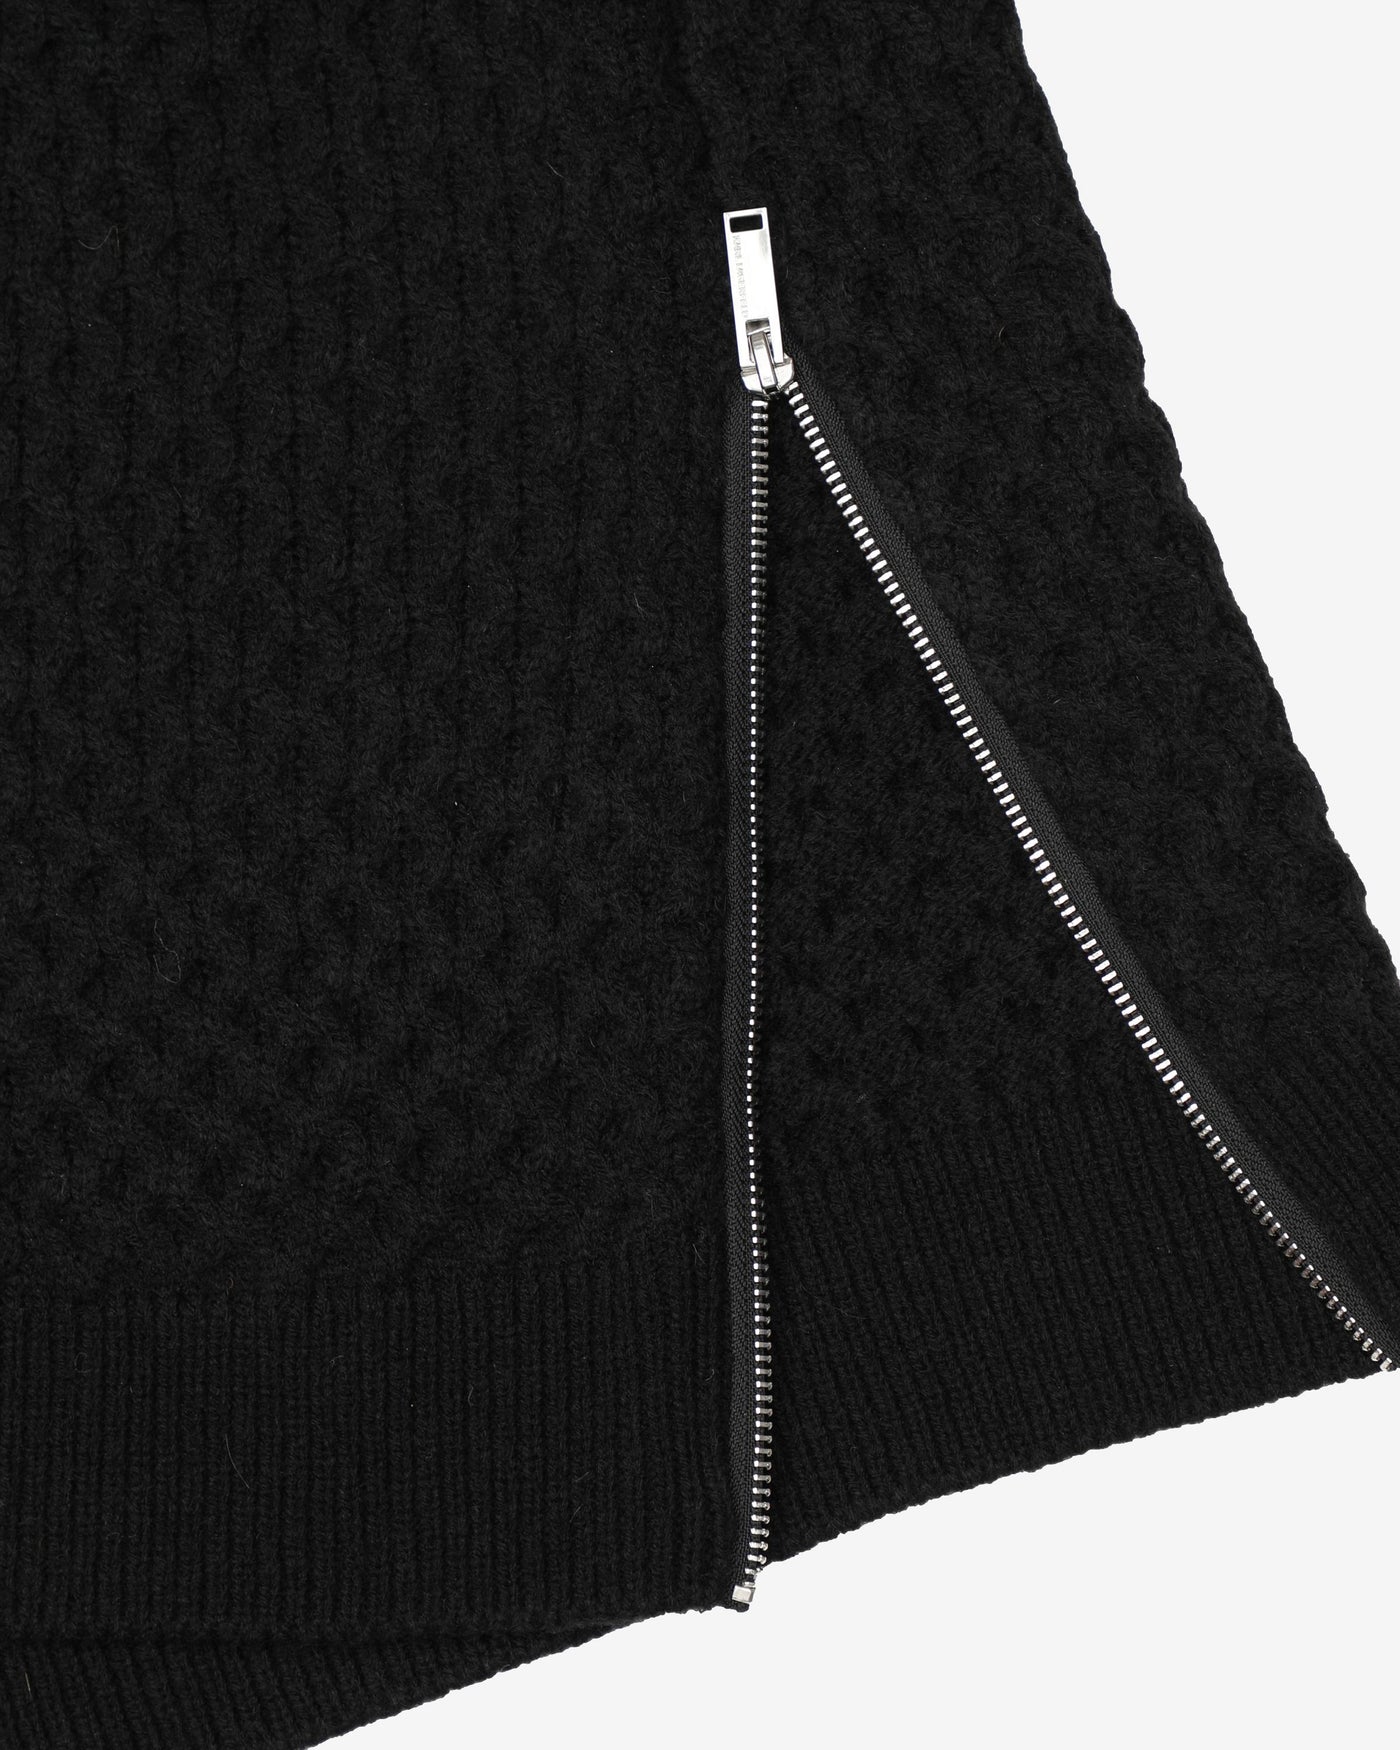 Karl Lagerfield Black Knitted Patterned Sweatshirt - M